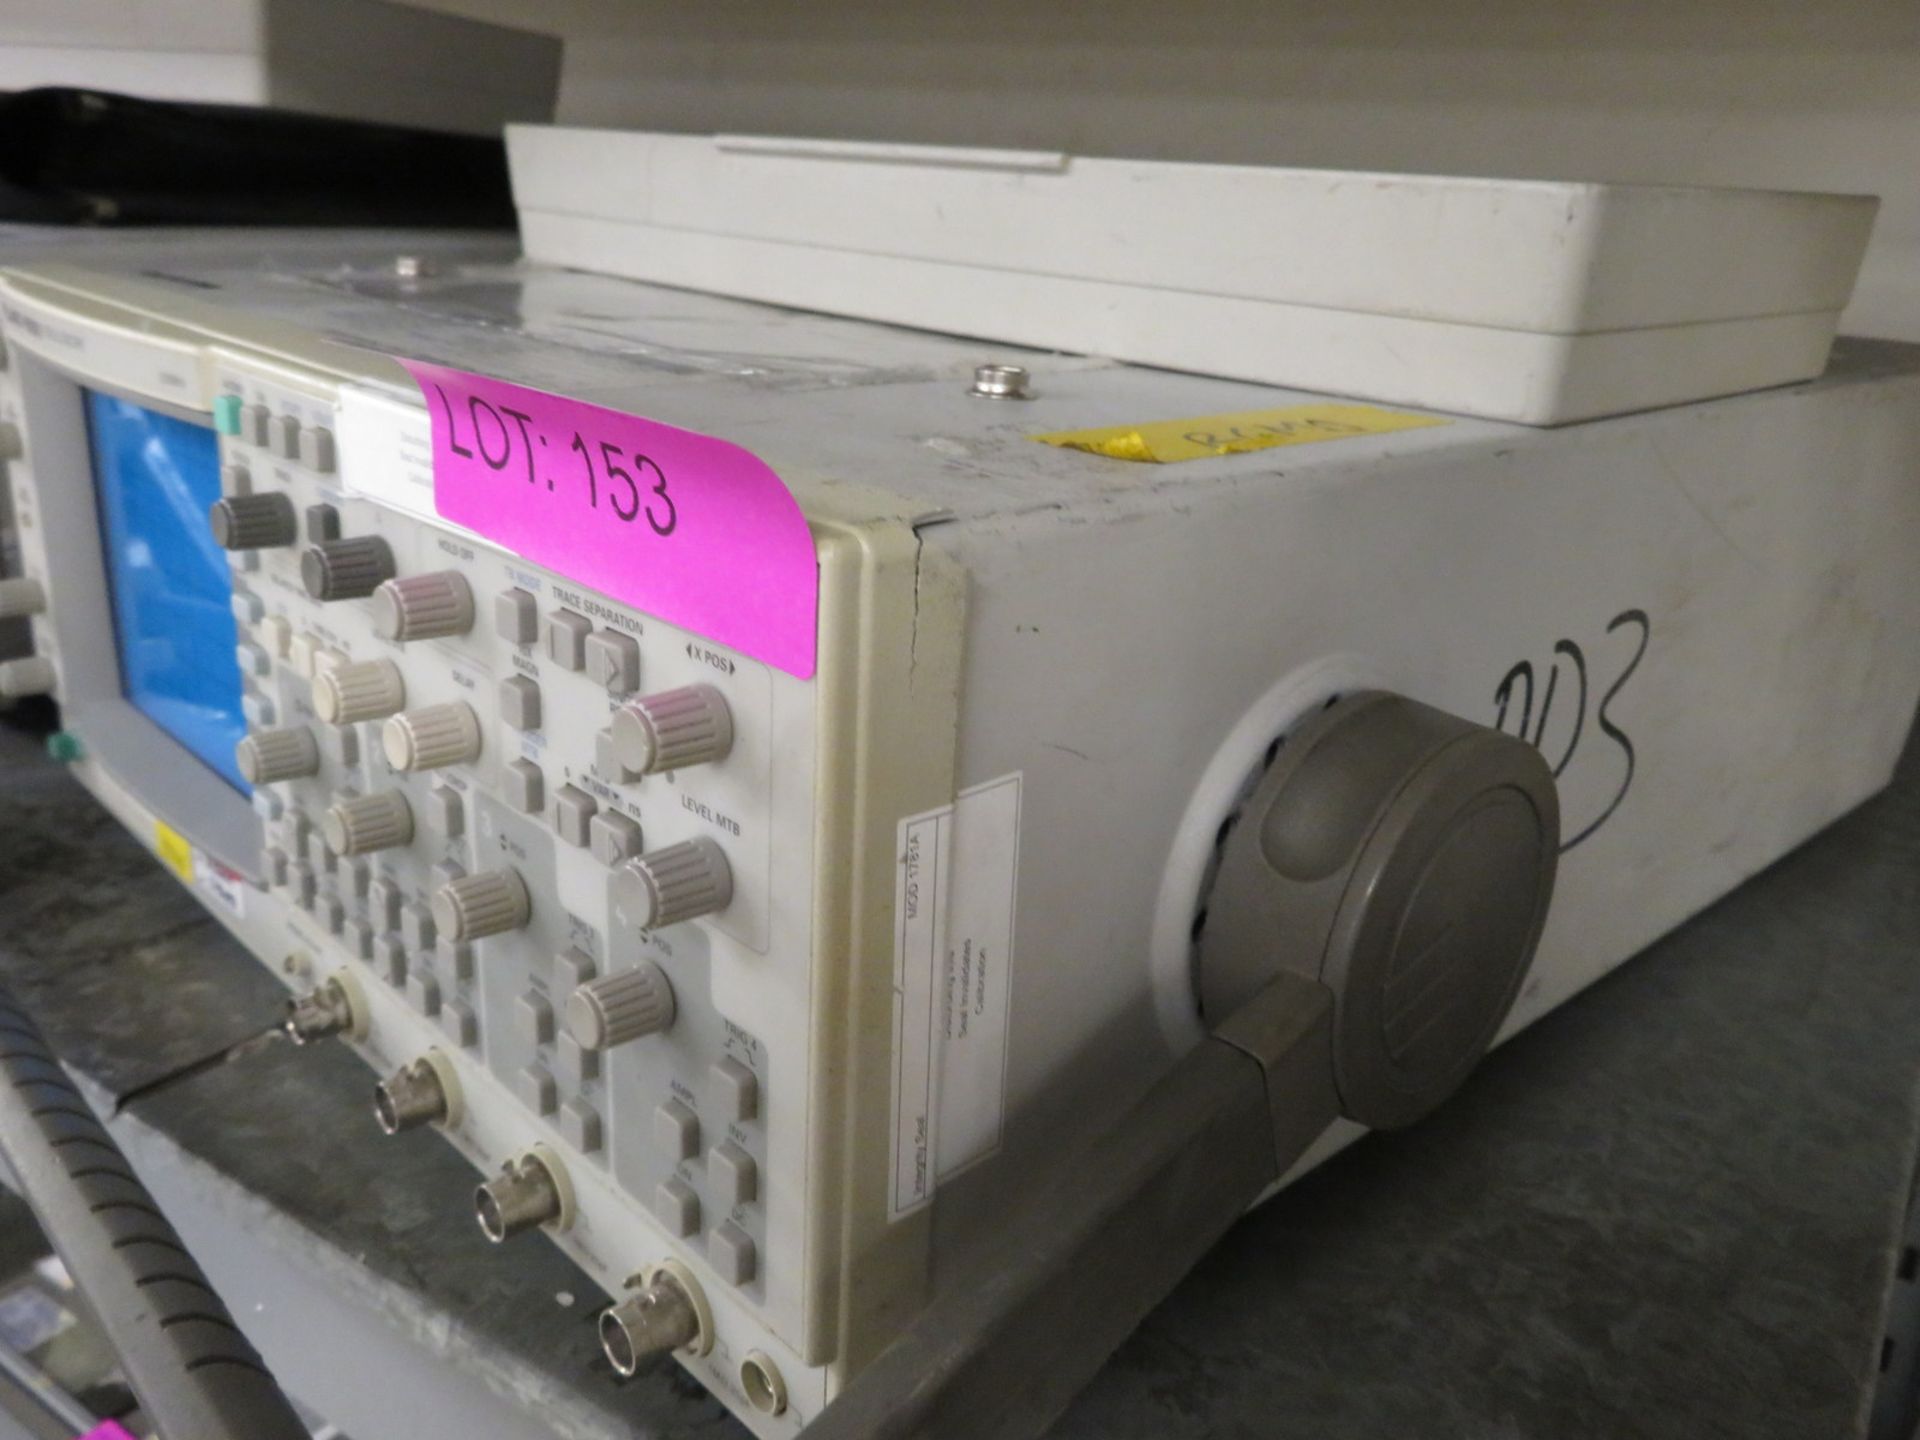 Fluke PM3092 oscilloscope 200MHz - Image 4 of 4